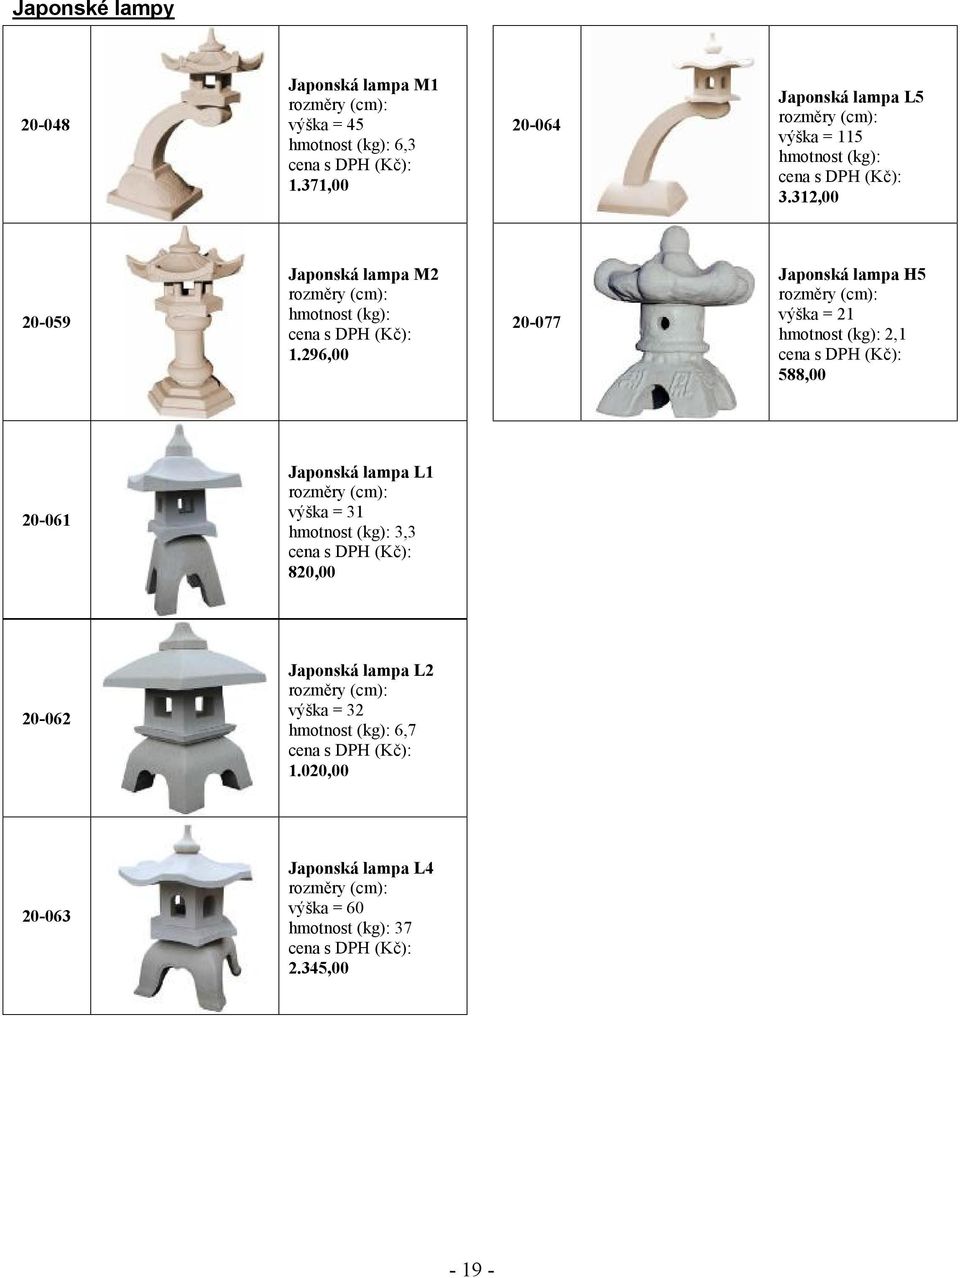 2 20-077 Japonská lampa H5 výška = 21 hmotnost (kg): 2,1 588,00 20-061 Japonská lampa L1 výška = 31 hmotnost